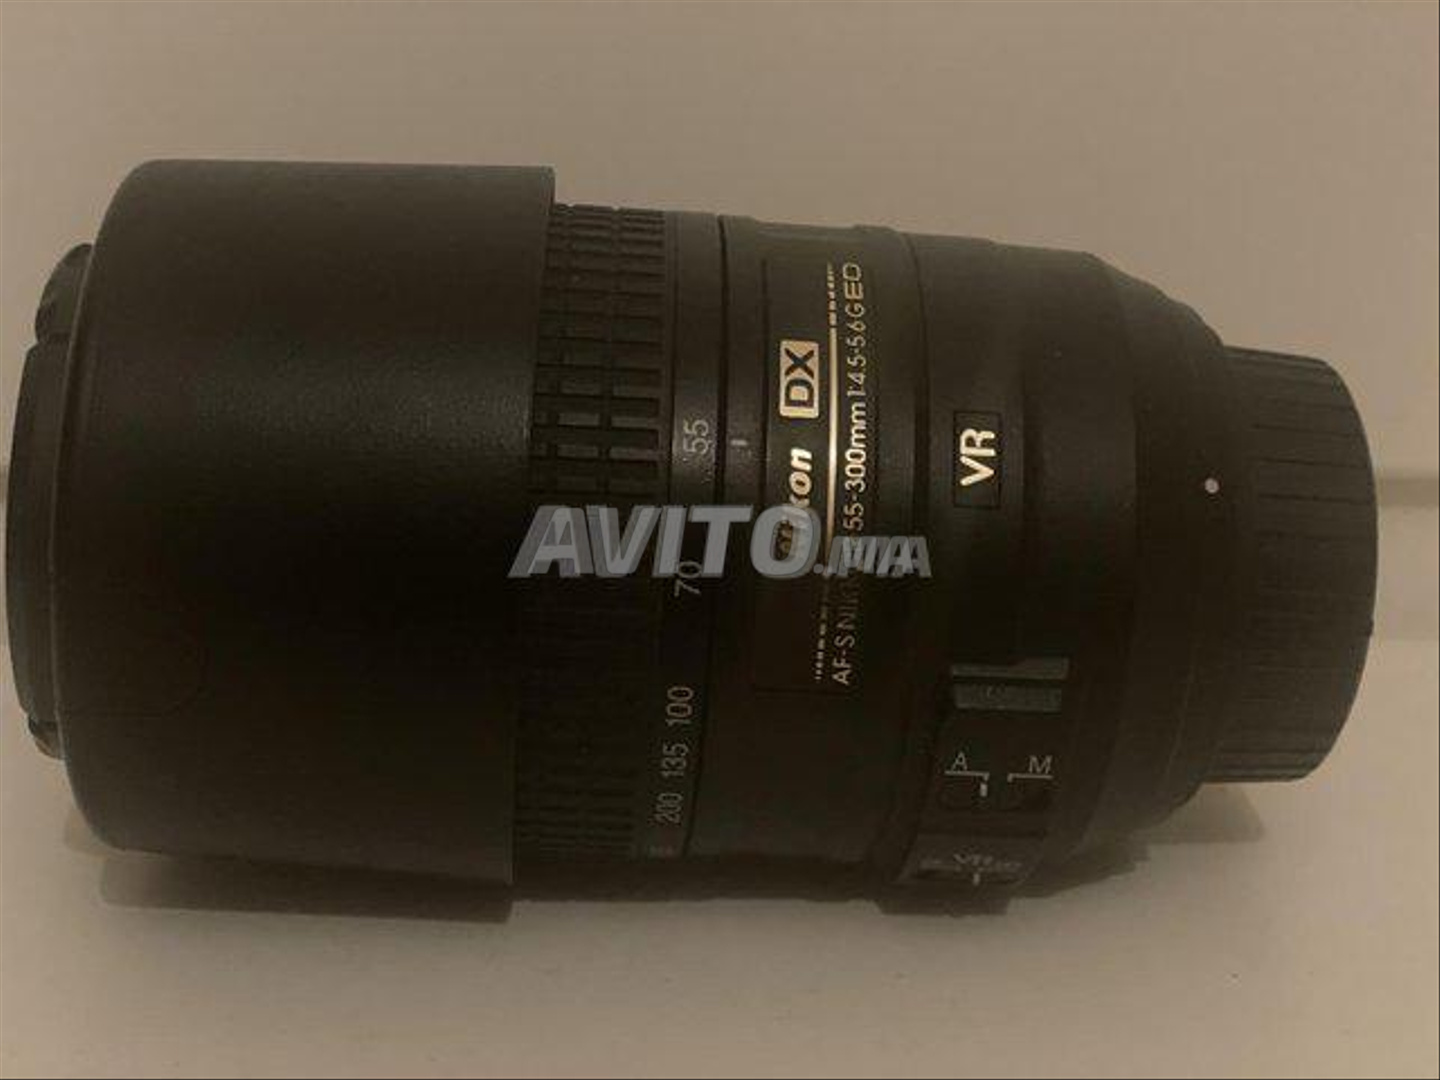 Objectif Nikon AF-S DX 55-300  - 2